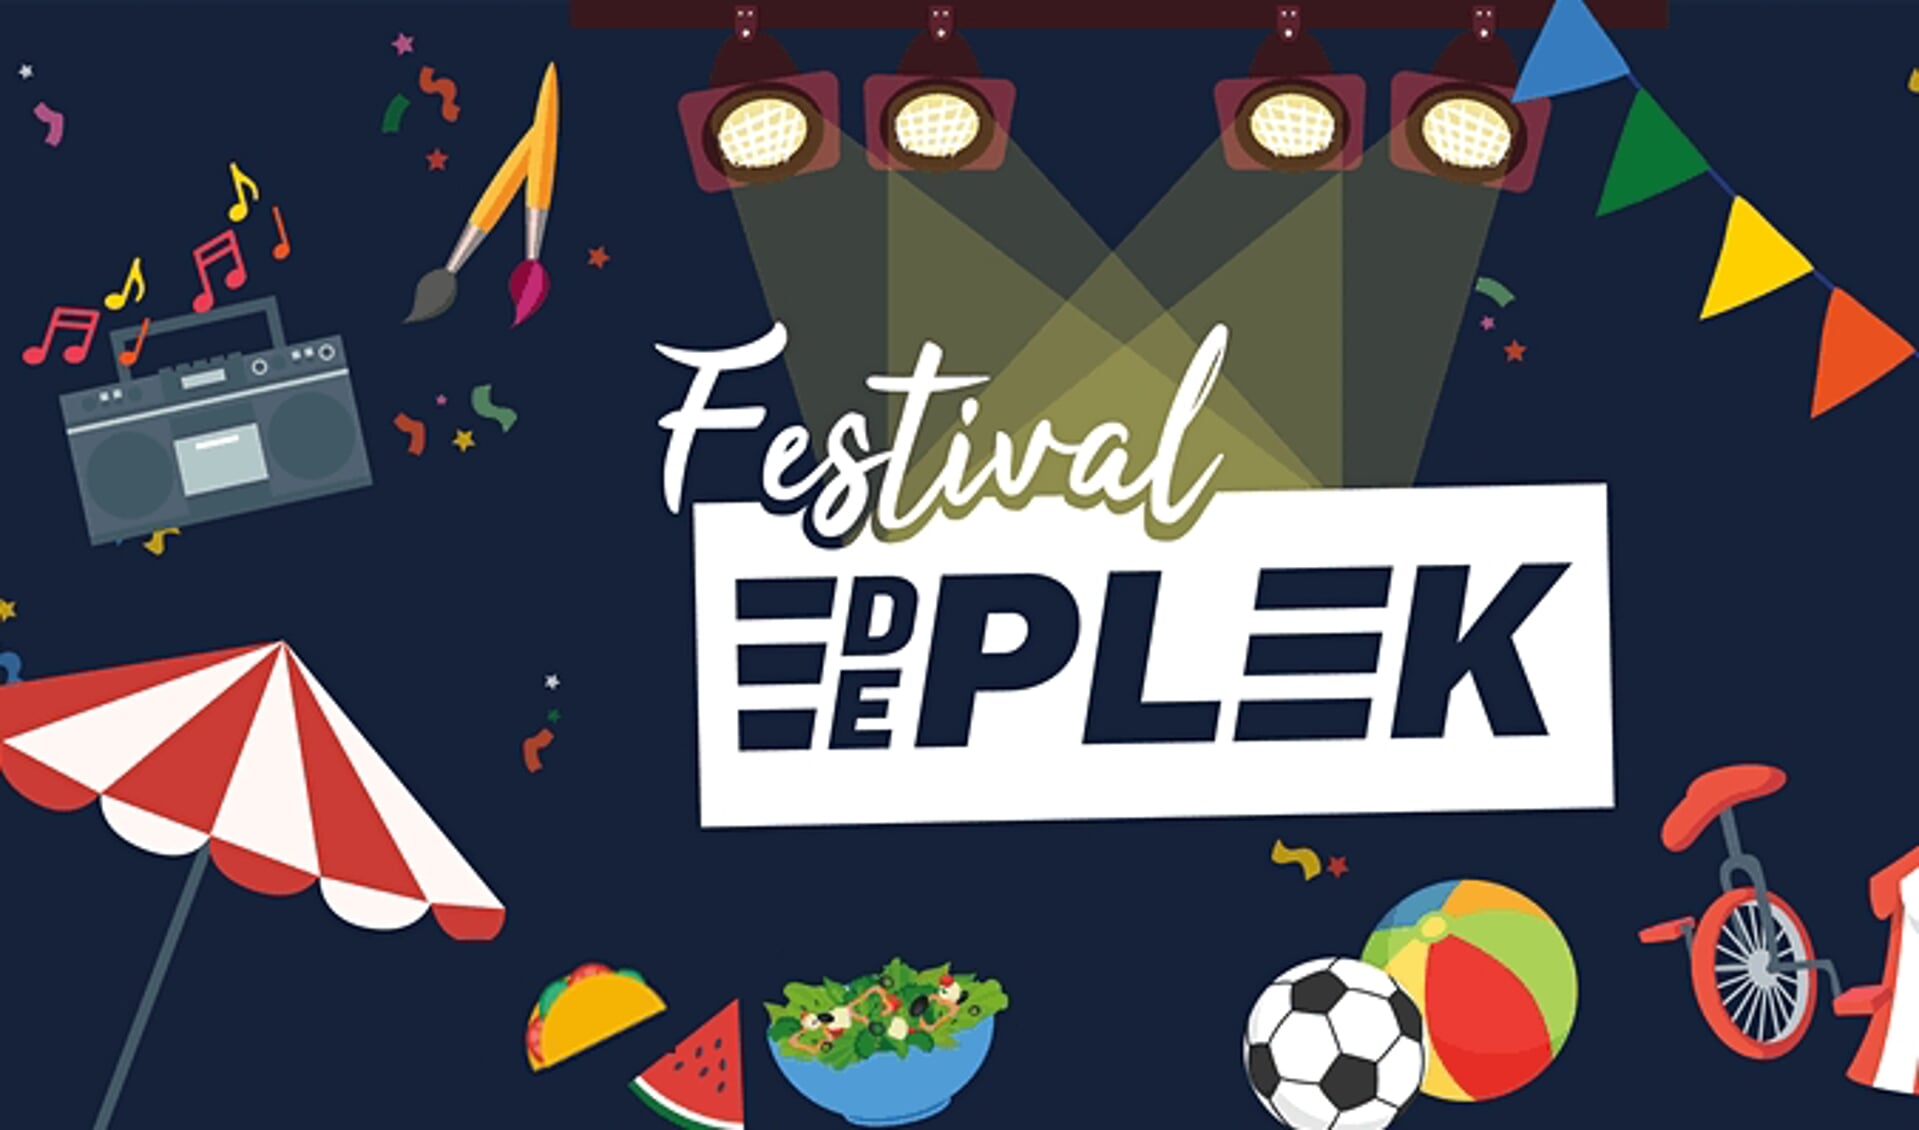 Wijkbewoners, clubs en verenigingen uit heel Maaspoort slaan de handen ineen om op zondag 5 september een gratis evenement voor jong en oud te organiseren: Festival De Plek.